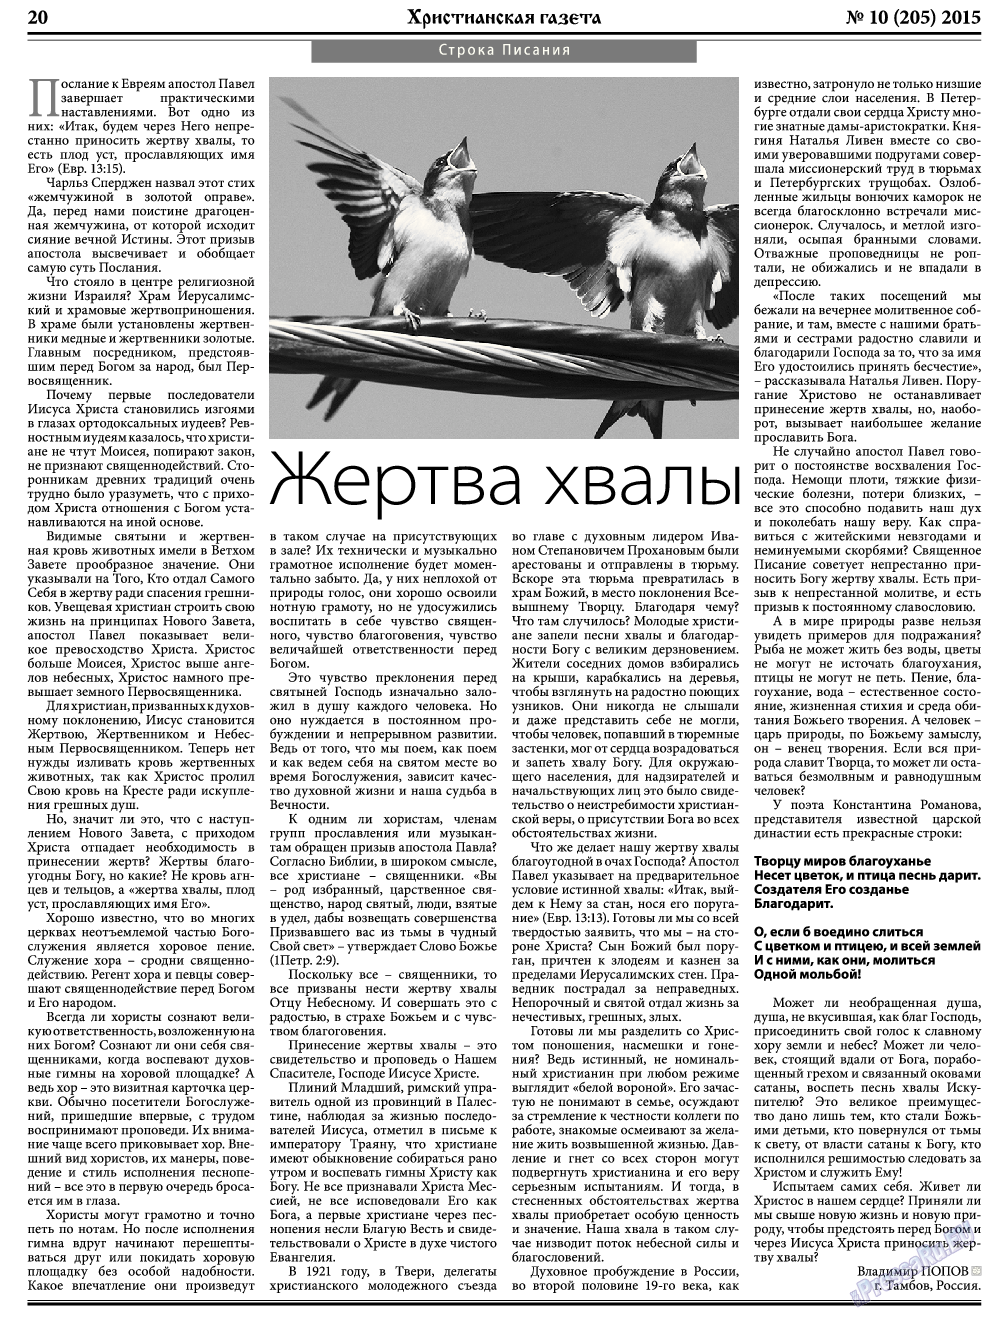 Христианская газета, газета. 2015 №10 стр.28